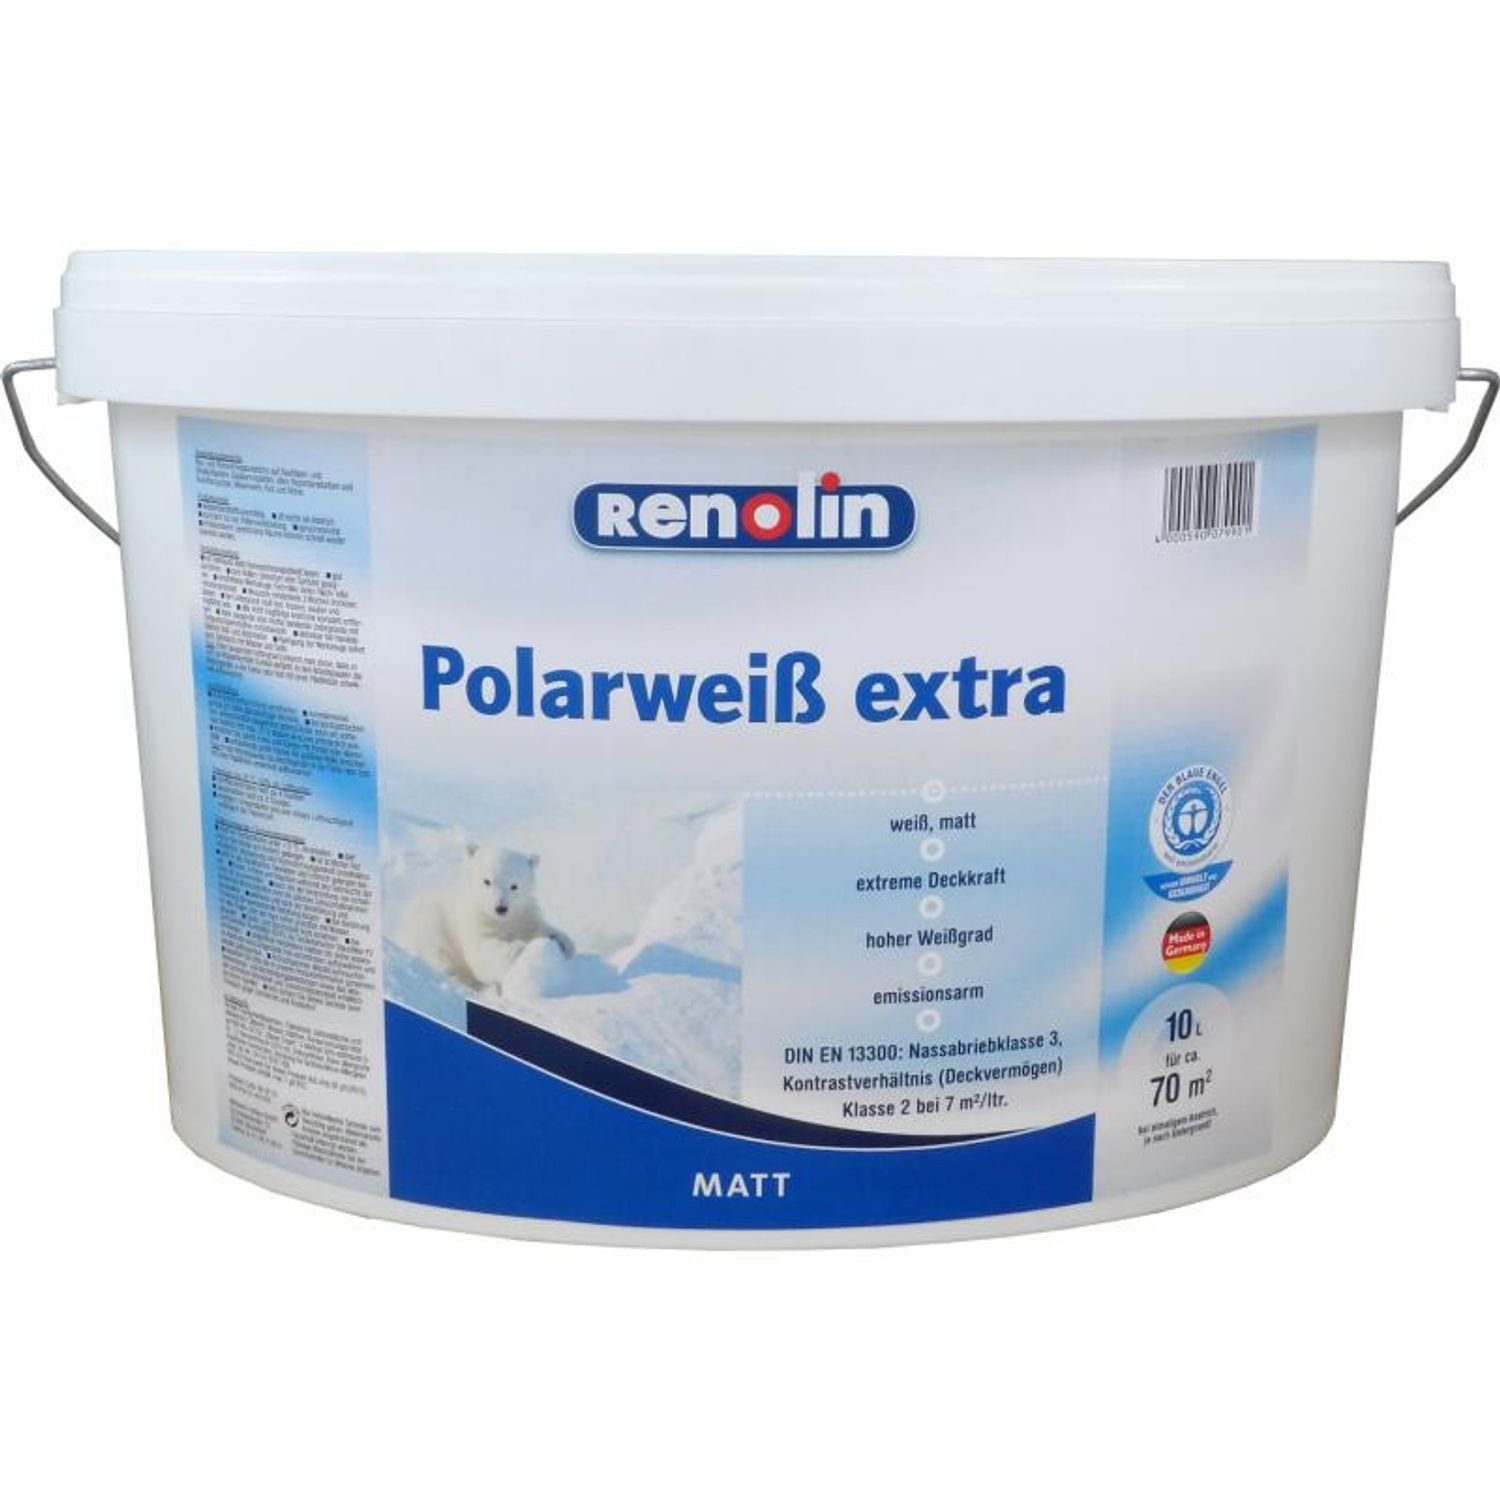 Wilckens Farben Vollton- und Polarweiß matt 10 weiß Abtönfarbe Wandfarbe 70m² extreme extra Liter Renolin